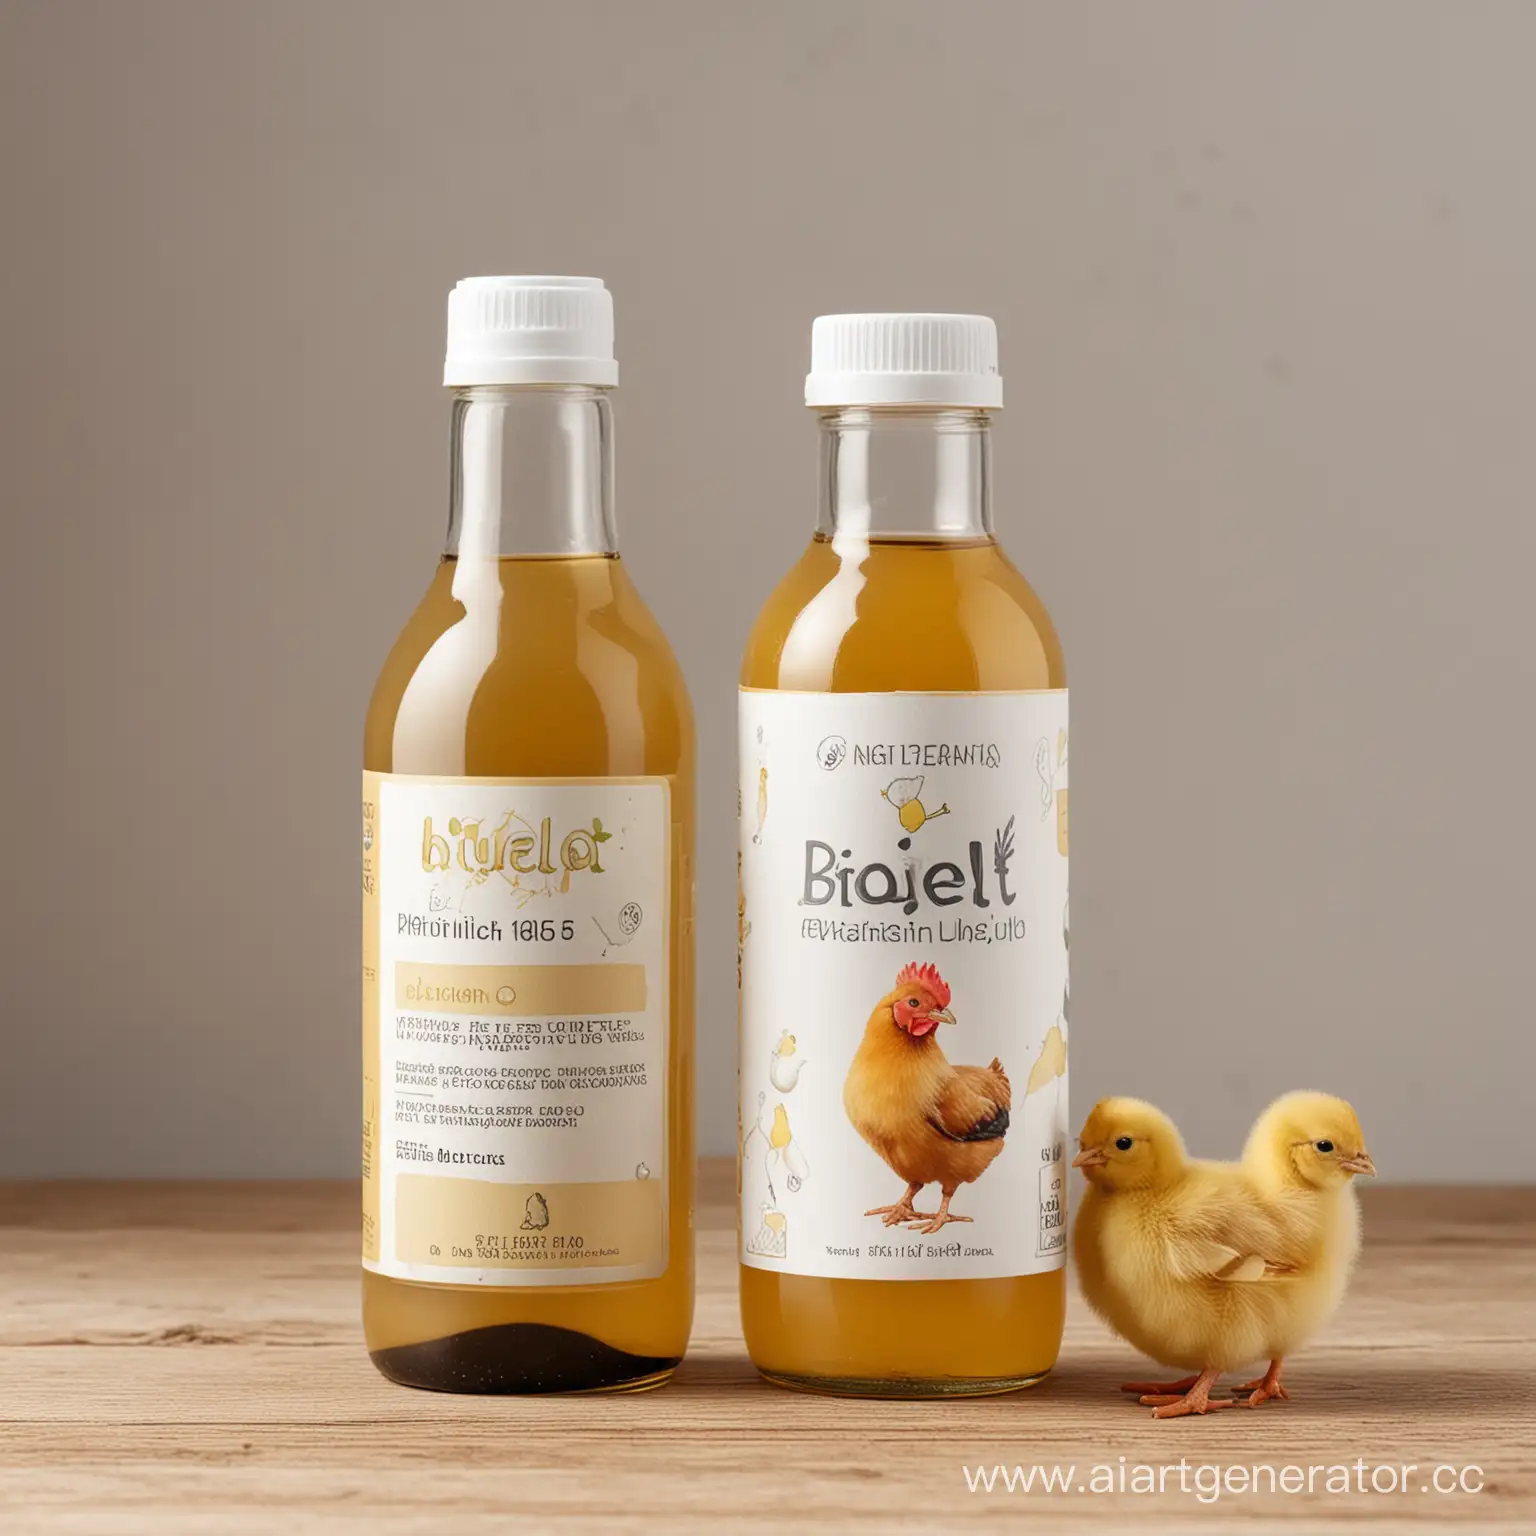 фото флакона с жидкостью, пробиотик для птиц, этикетка с названием Биолёт и рисунком кур, цыплят